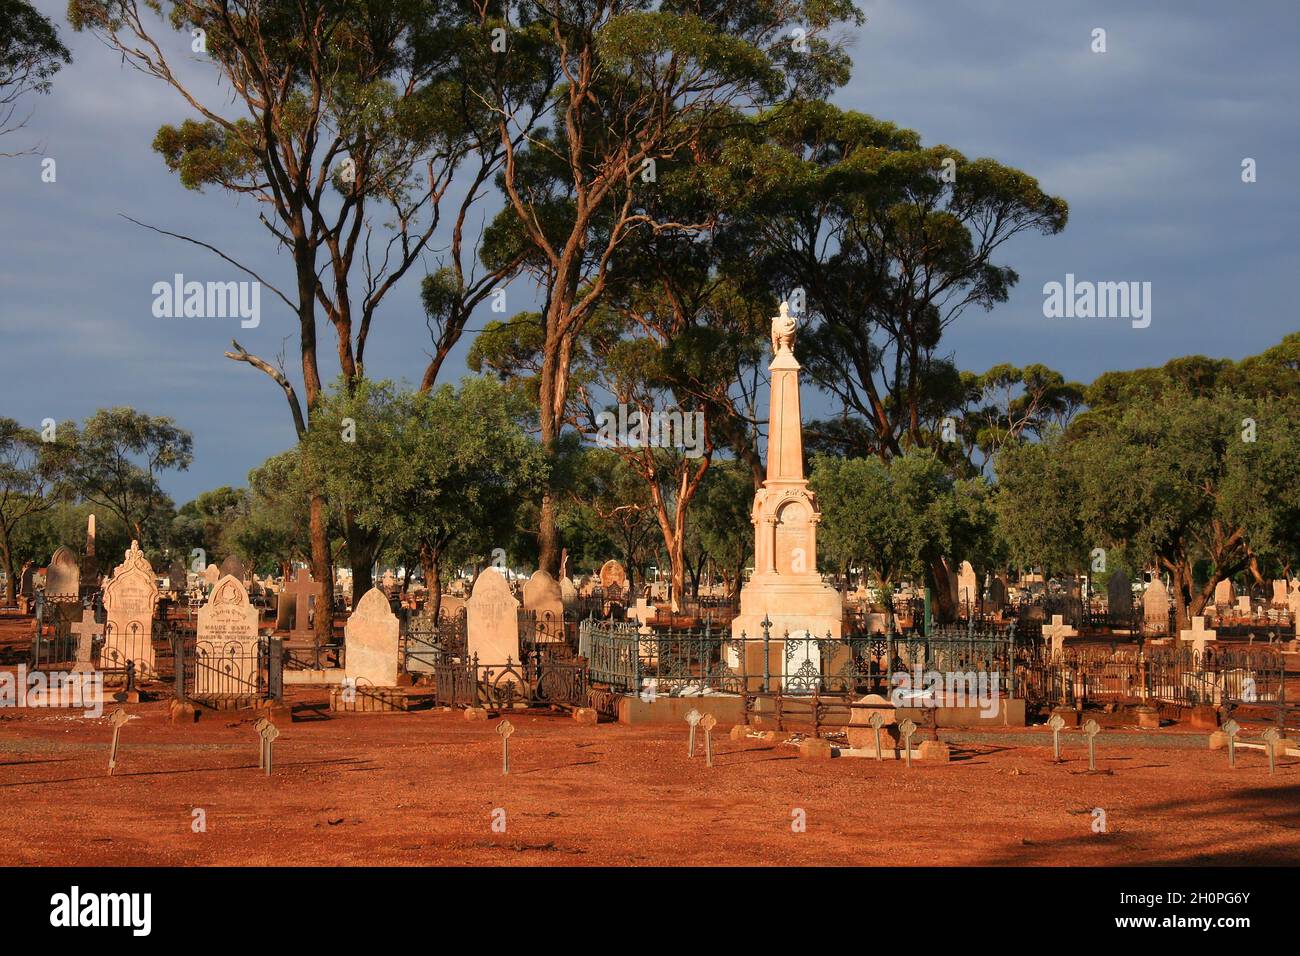 Cimitero di Kalgoorlie con terra rossa, lapidi, alberi e nuvole scure subito dopo una tempesta di tuore a Kalgoorlie, Australia Occidentale Foto Stock